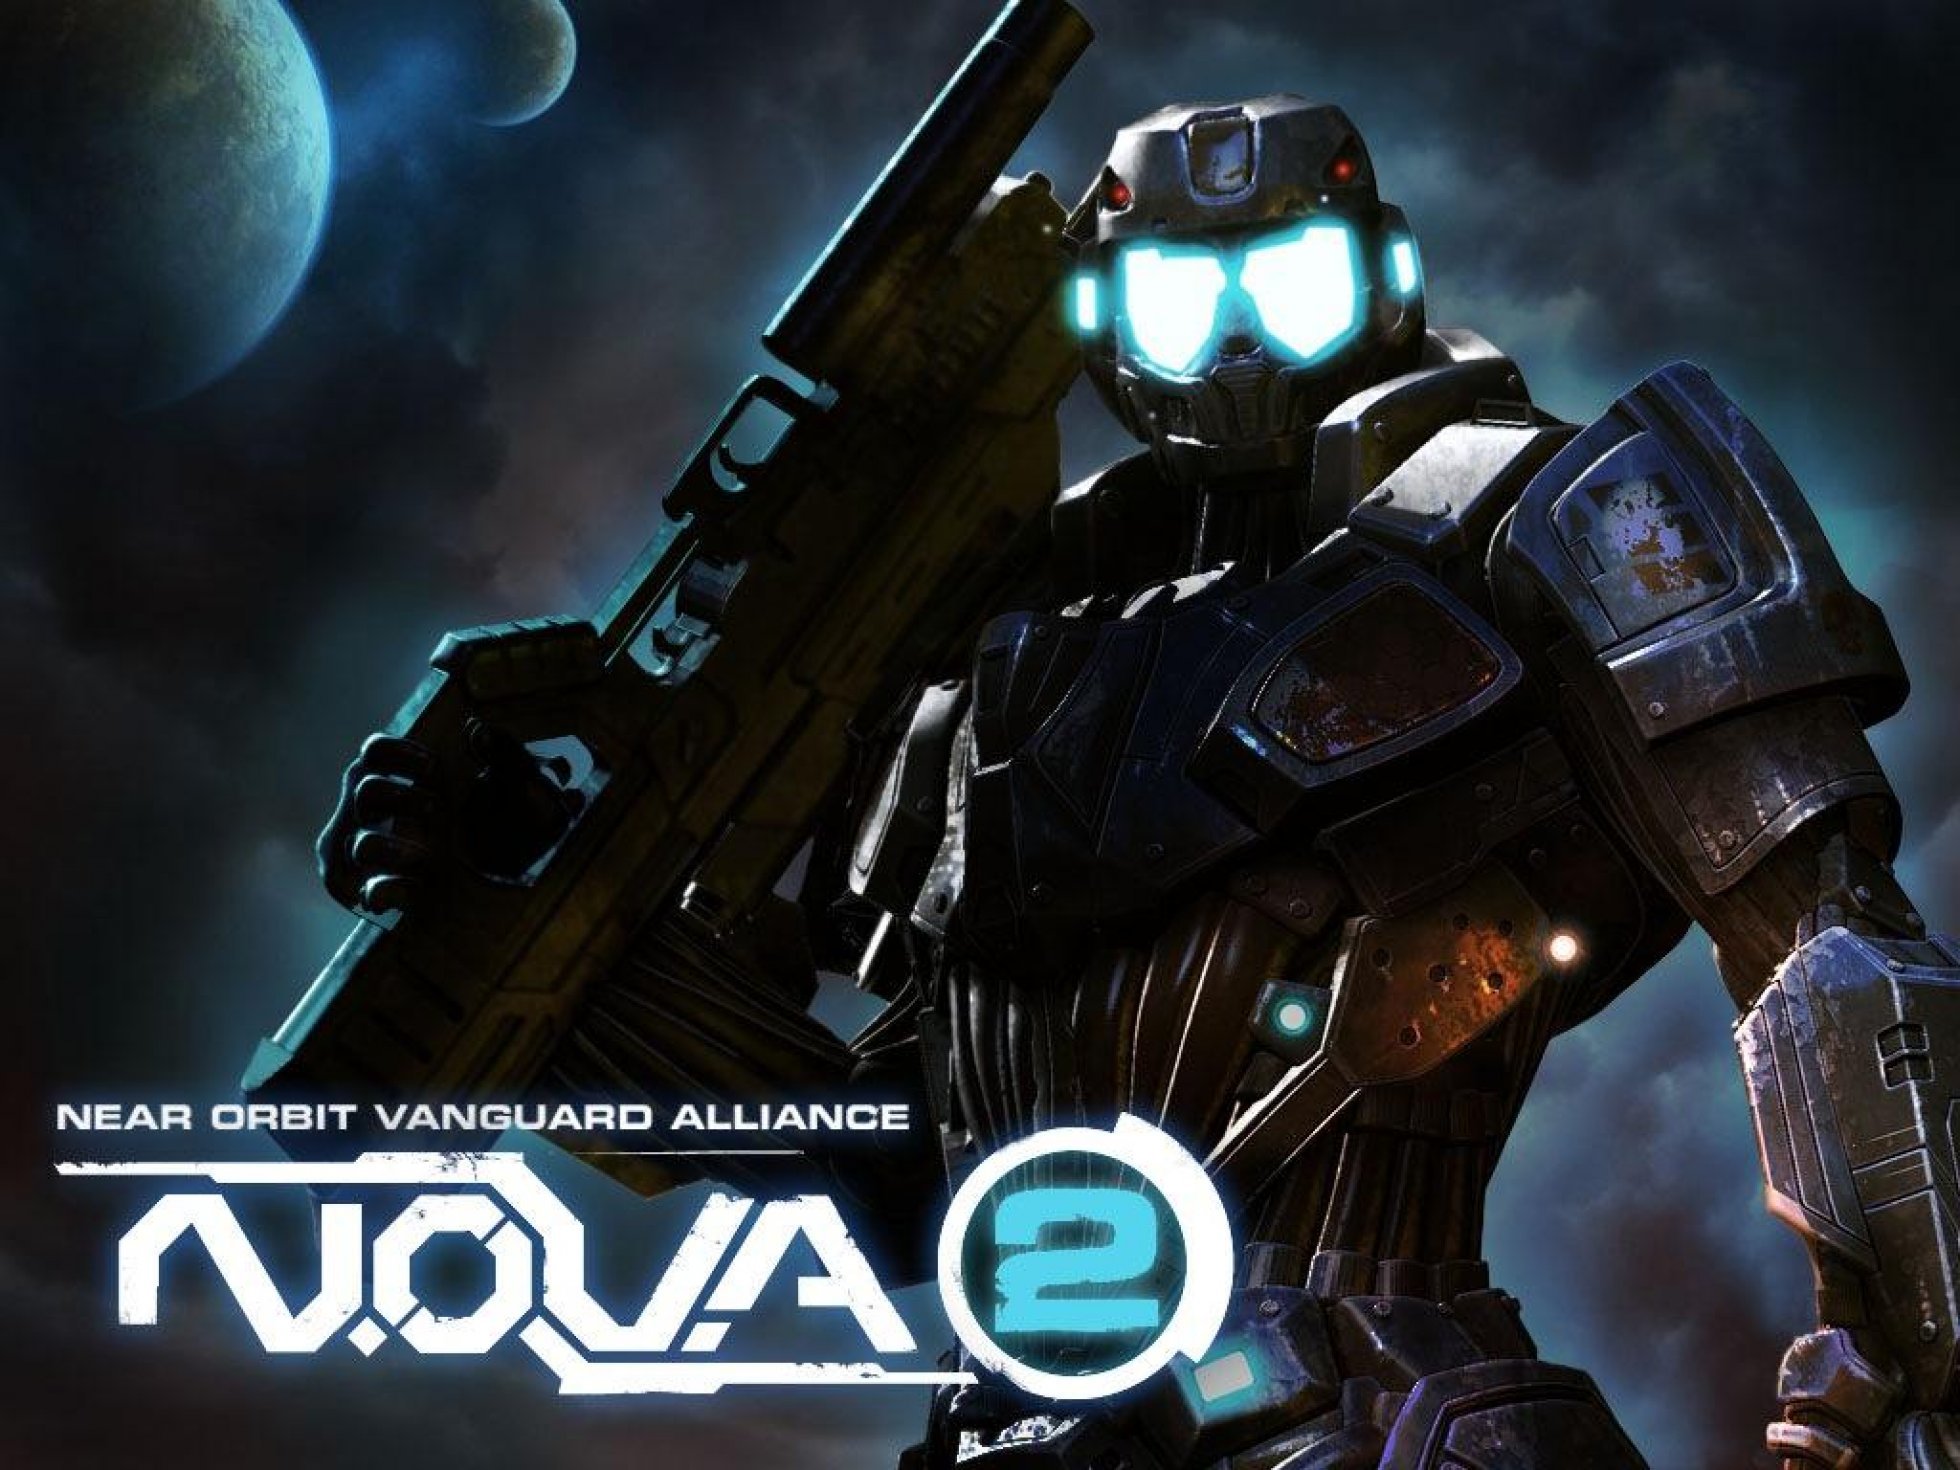 Нова 1 сюжет. N.O.V.A. 2: near Orbit Vanguard Alliance. Nova 2 игра. Nova 2 Gameloft. N.O.V.A. 2.